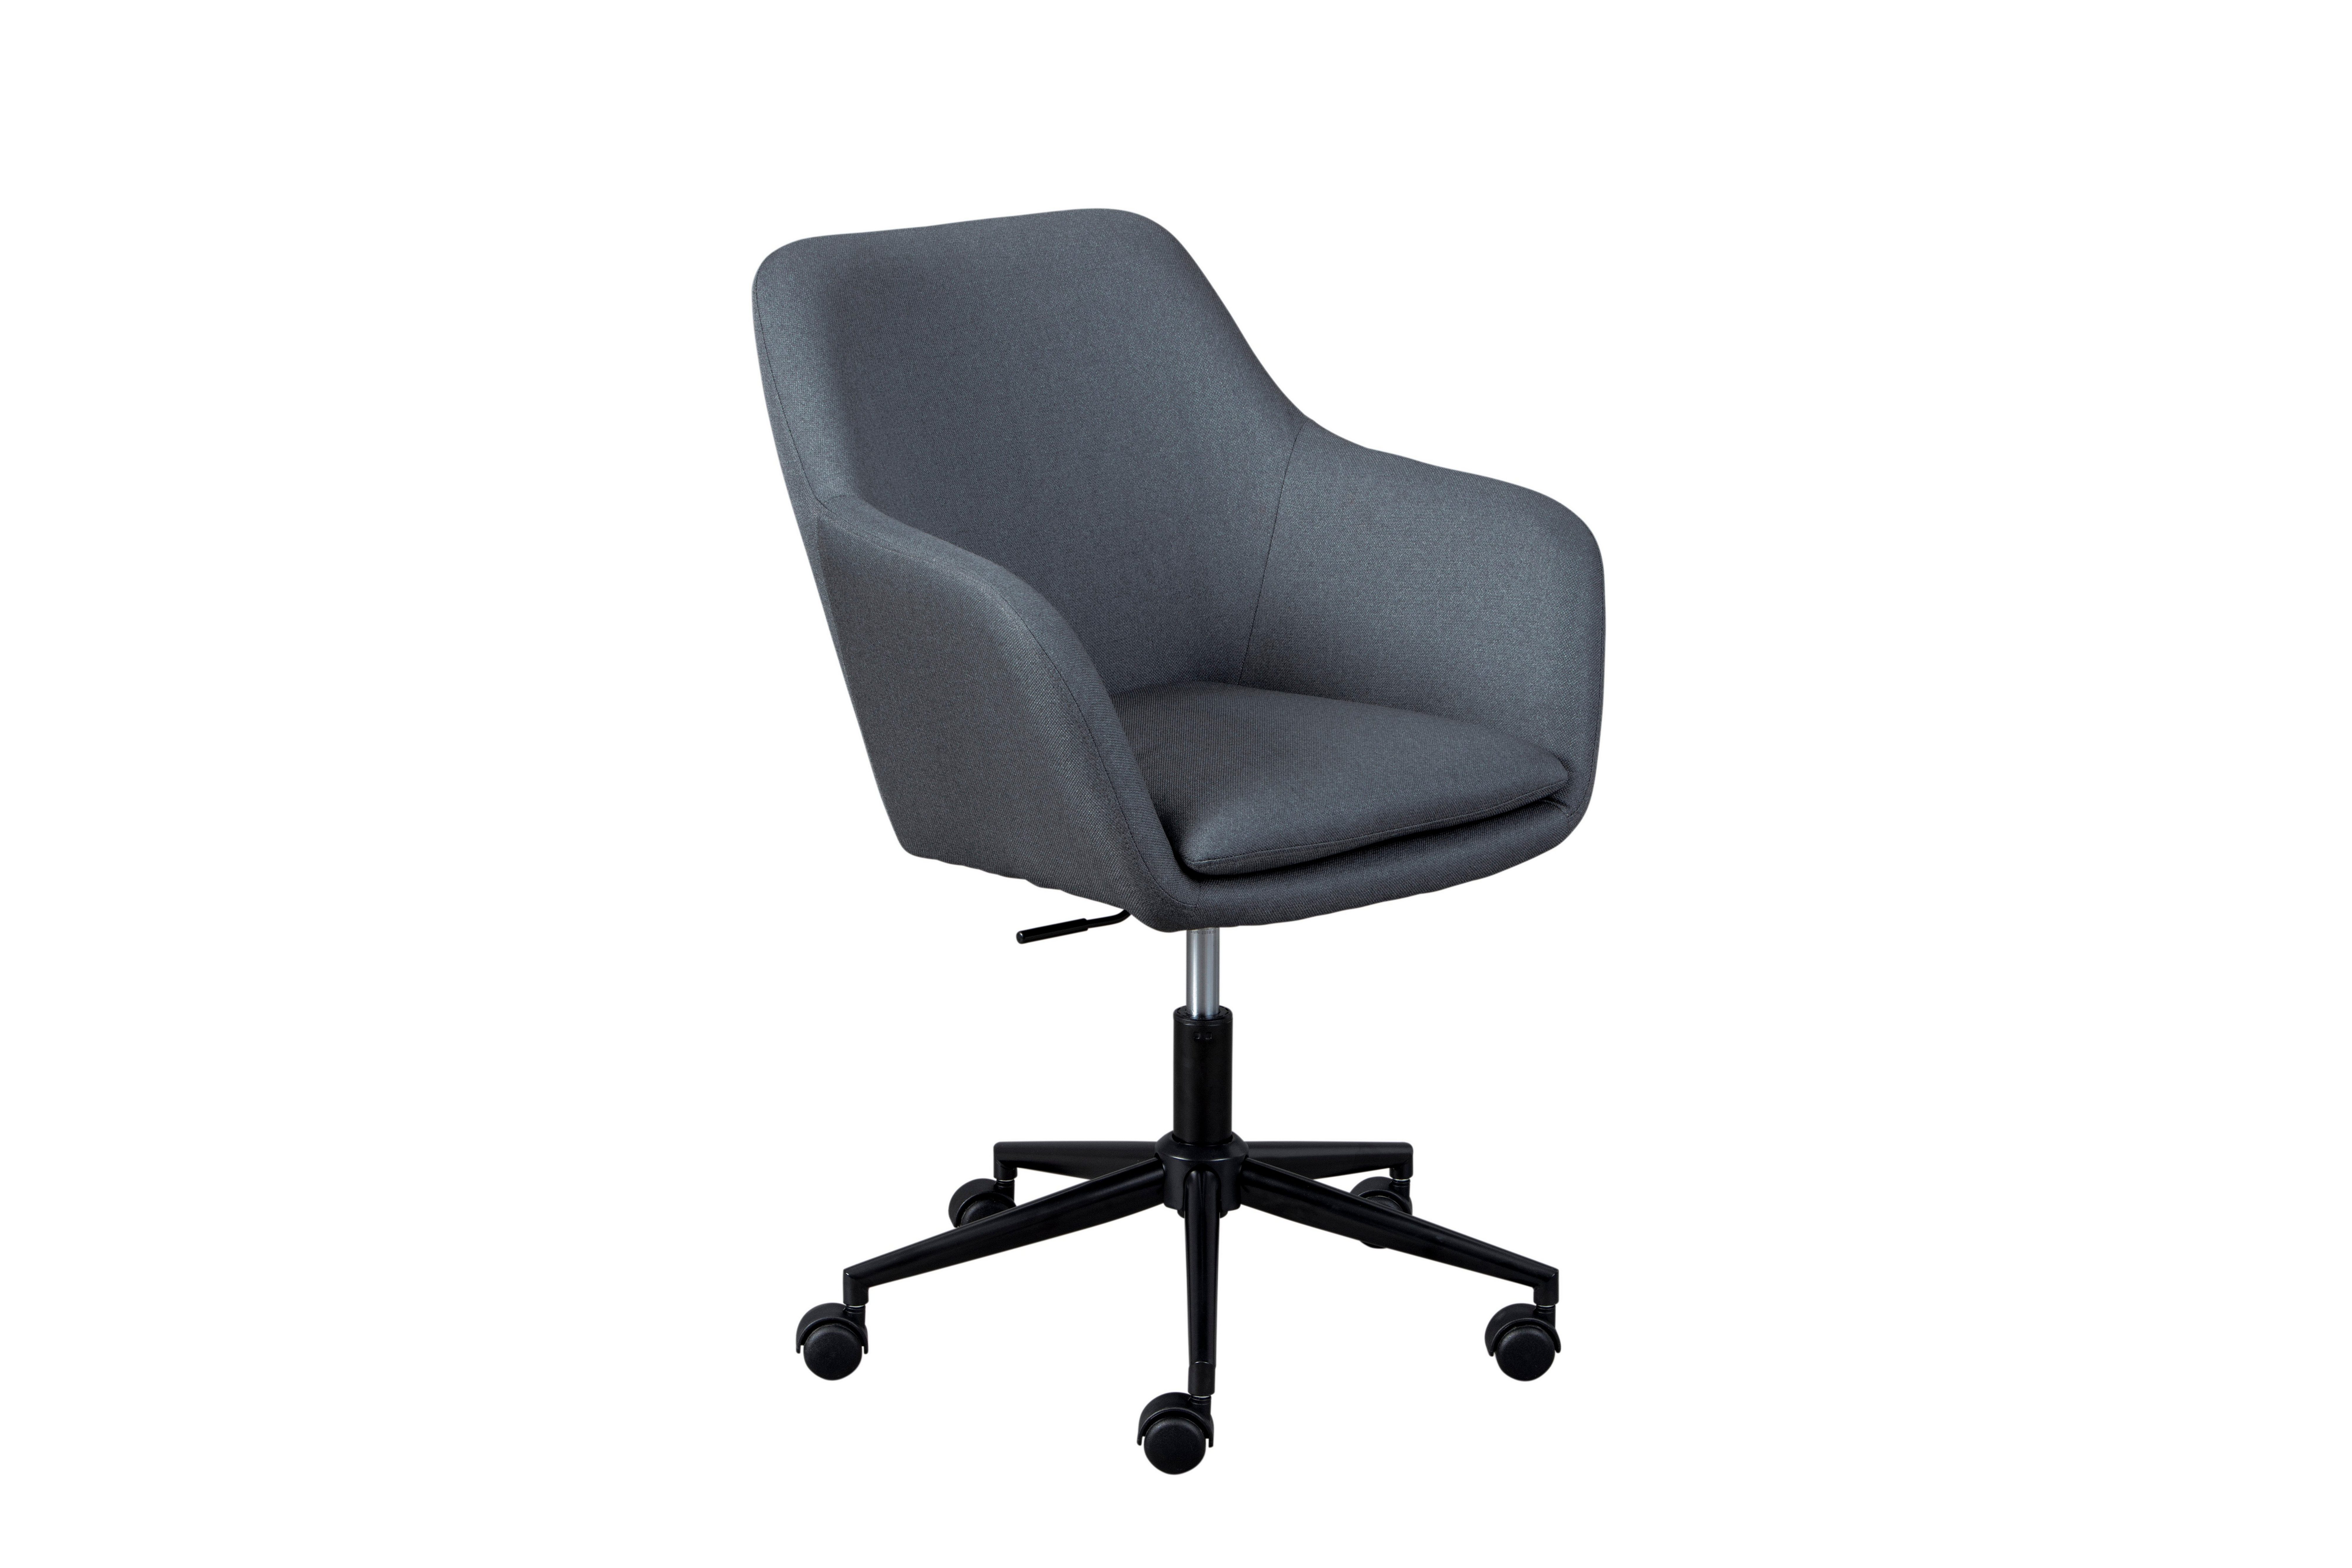 INOSIGN Inter Link Drehstuhl Workrelaxed, in 5 Trendfarben, abnehmbares Sitzkissen zur leichen Reinigung, Sicherheitsrollen, höhenverstellbar, Zeitloses Design Grau | Grau